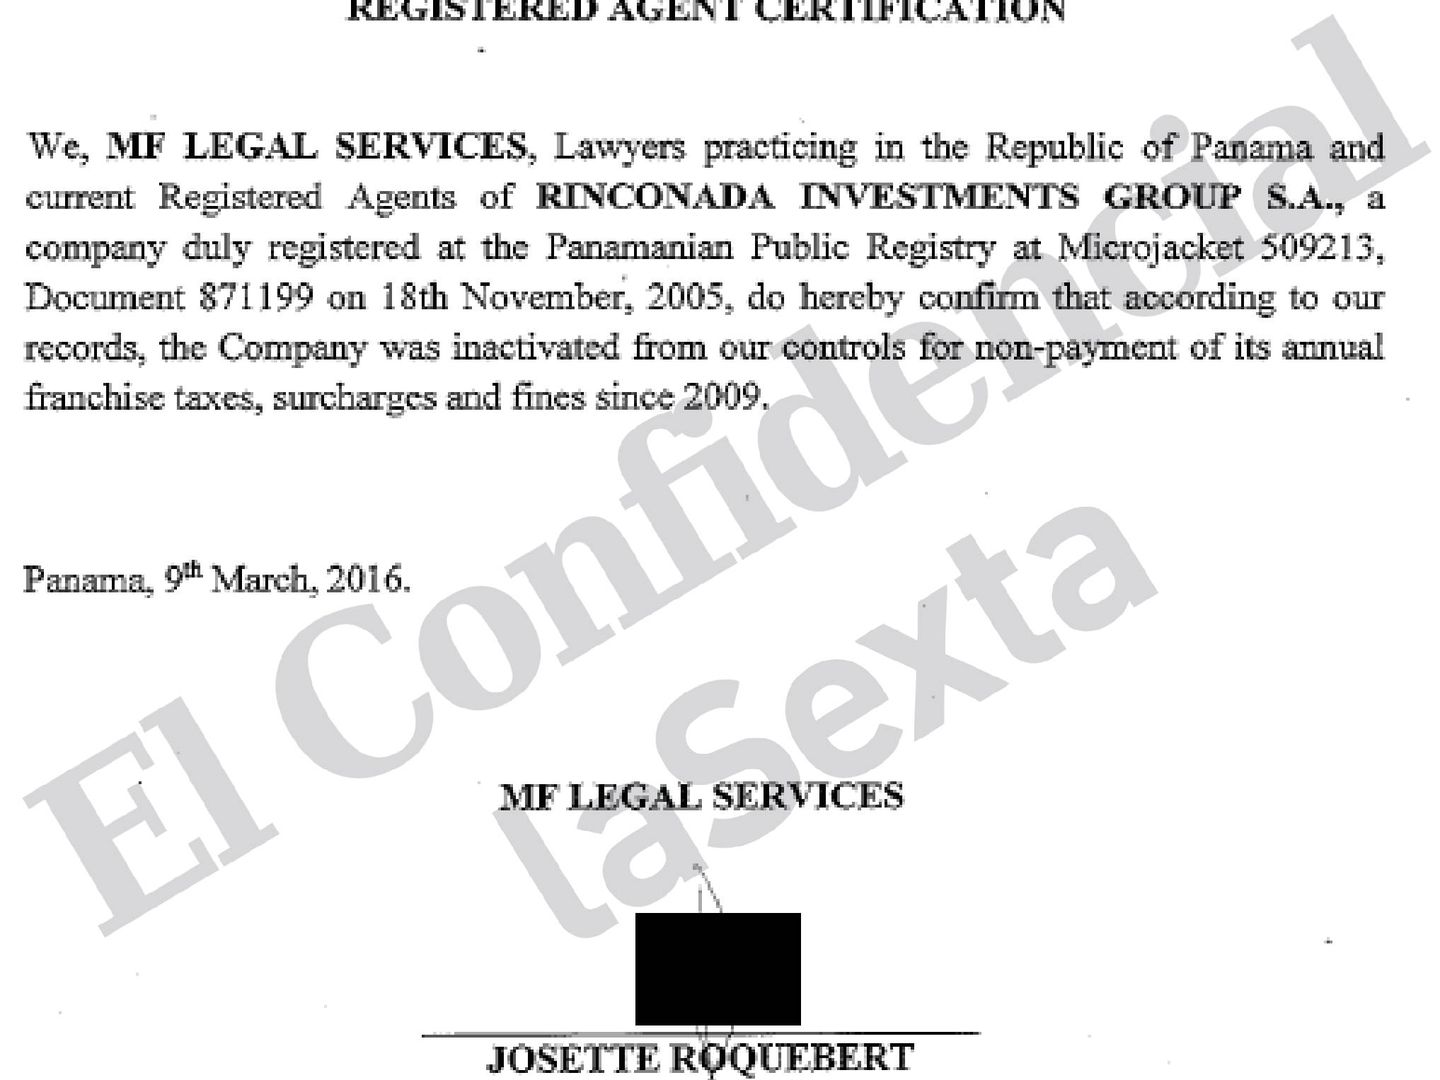 Borrador de certificado sobre Rinconada Investments rechazado por el representante familiar.